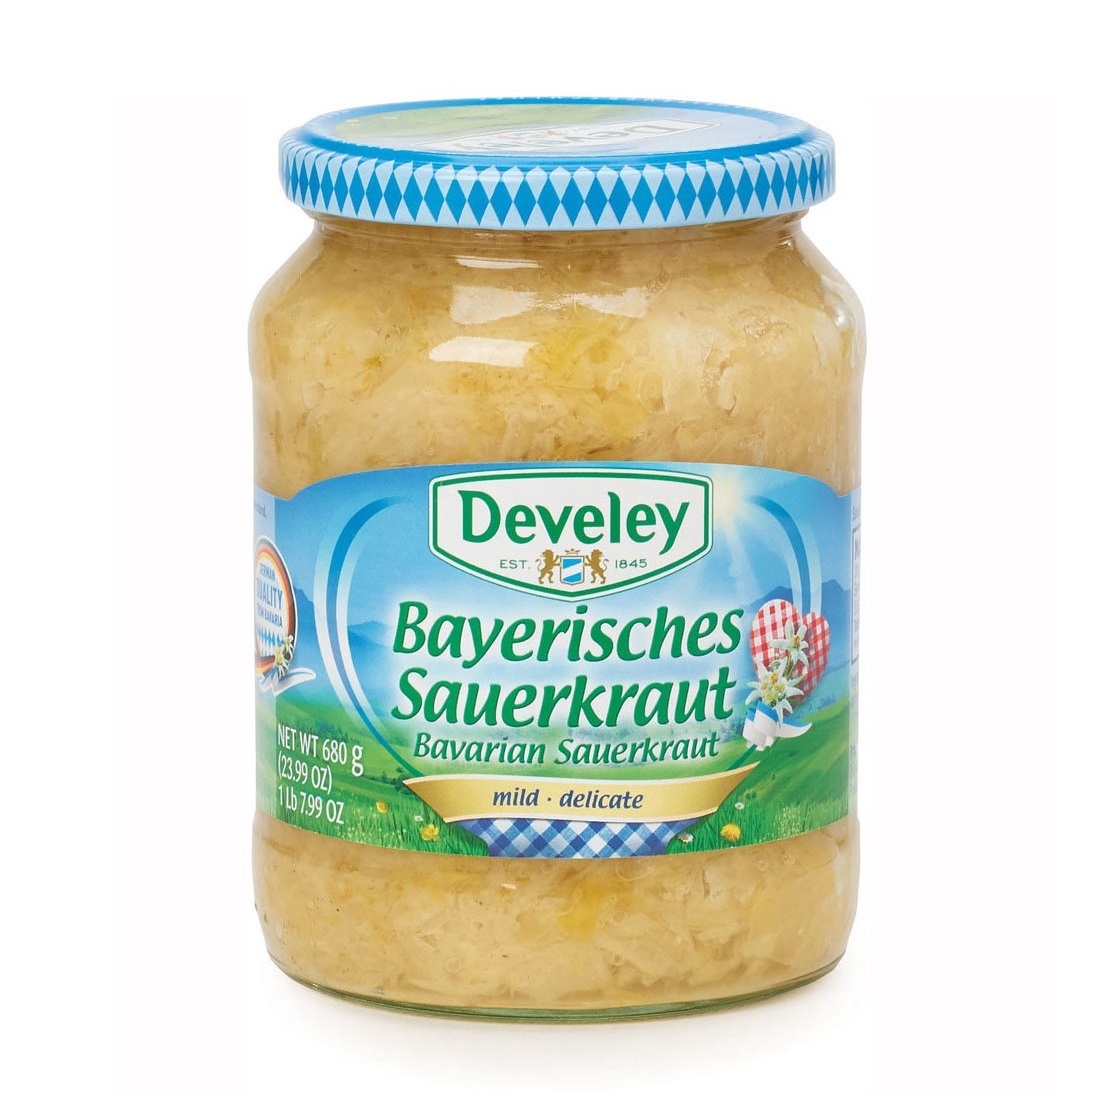 Develey Sauerkraut德國酸椰菜 680g